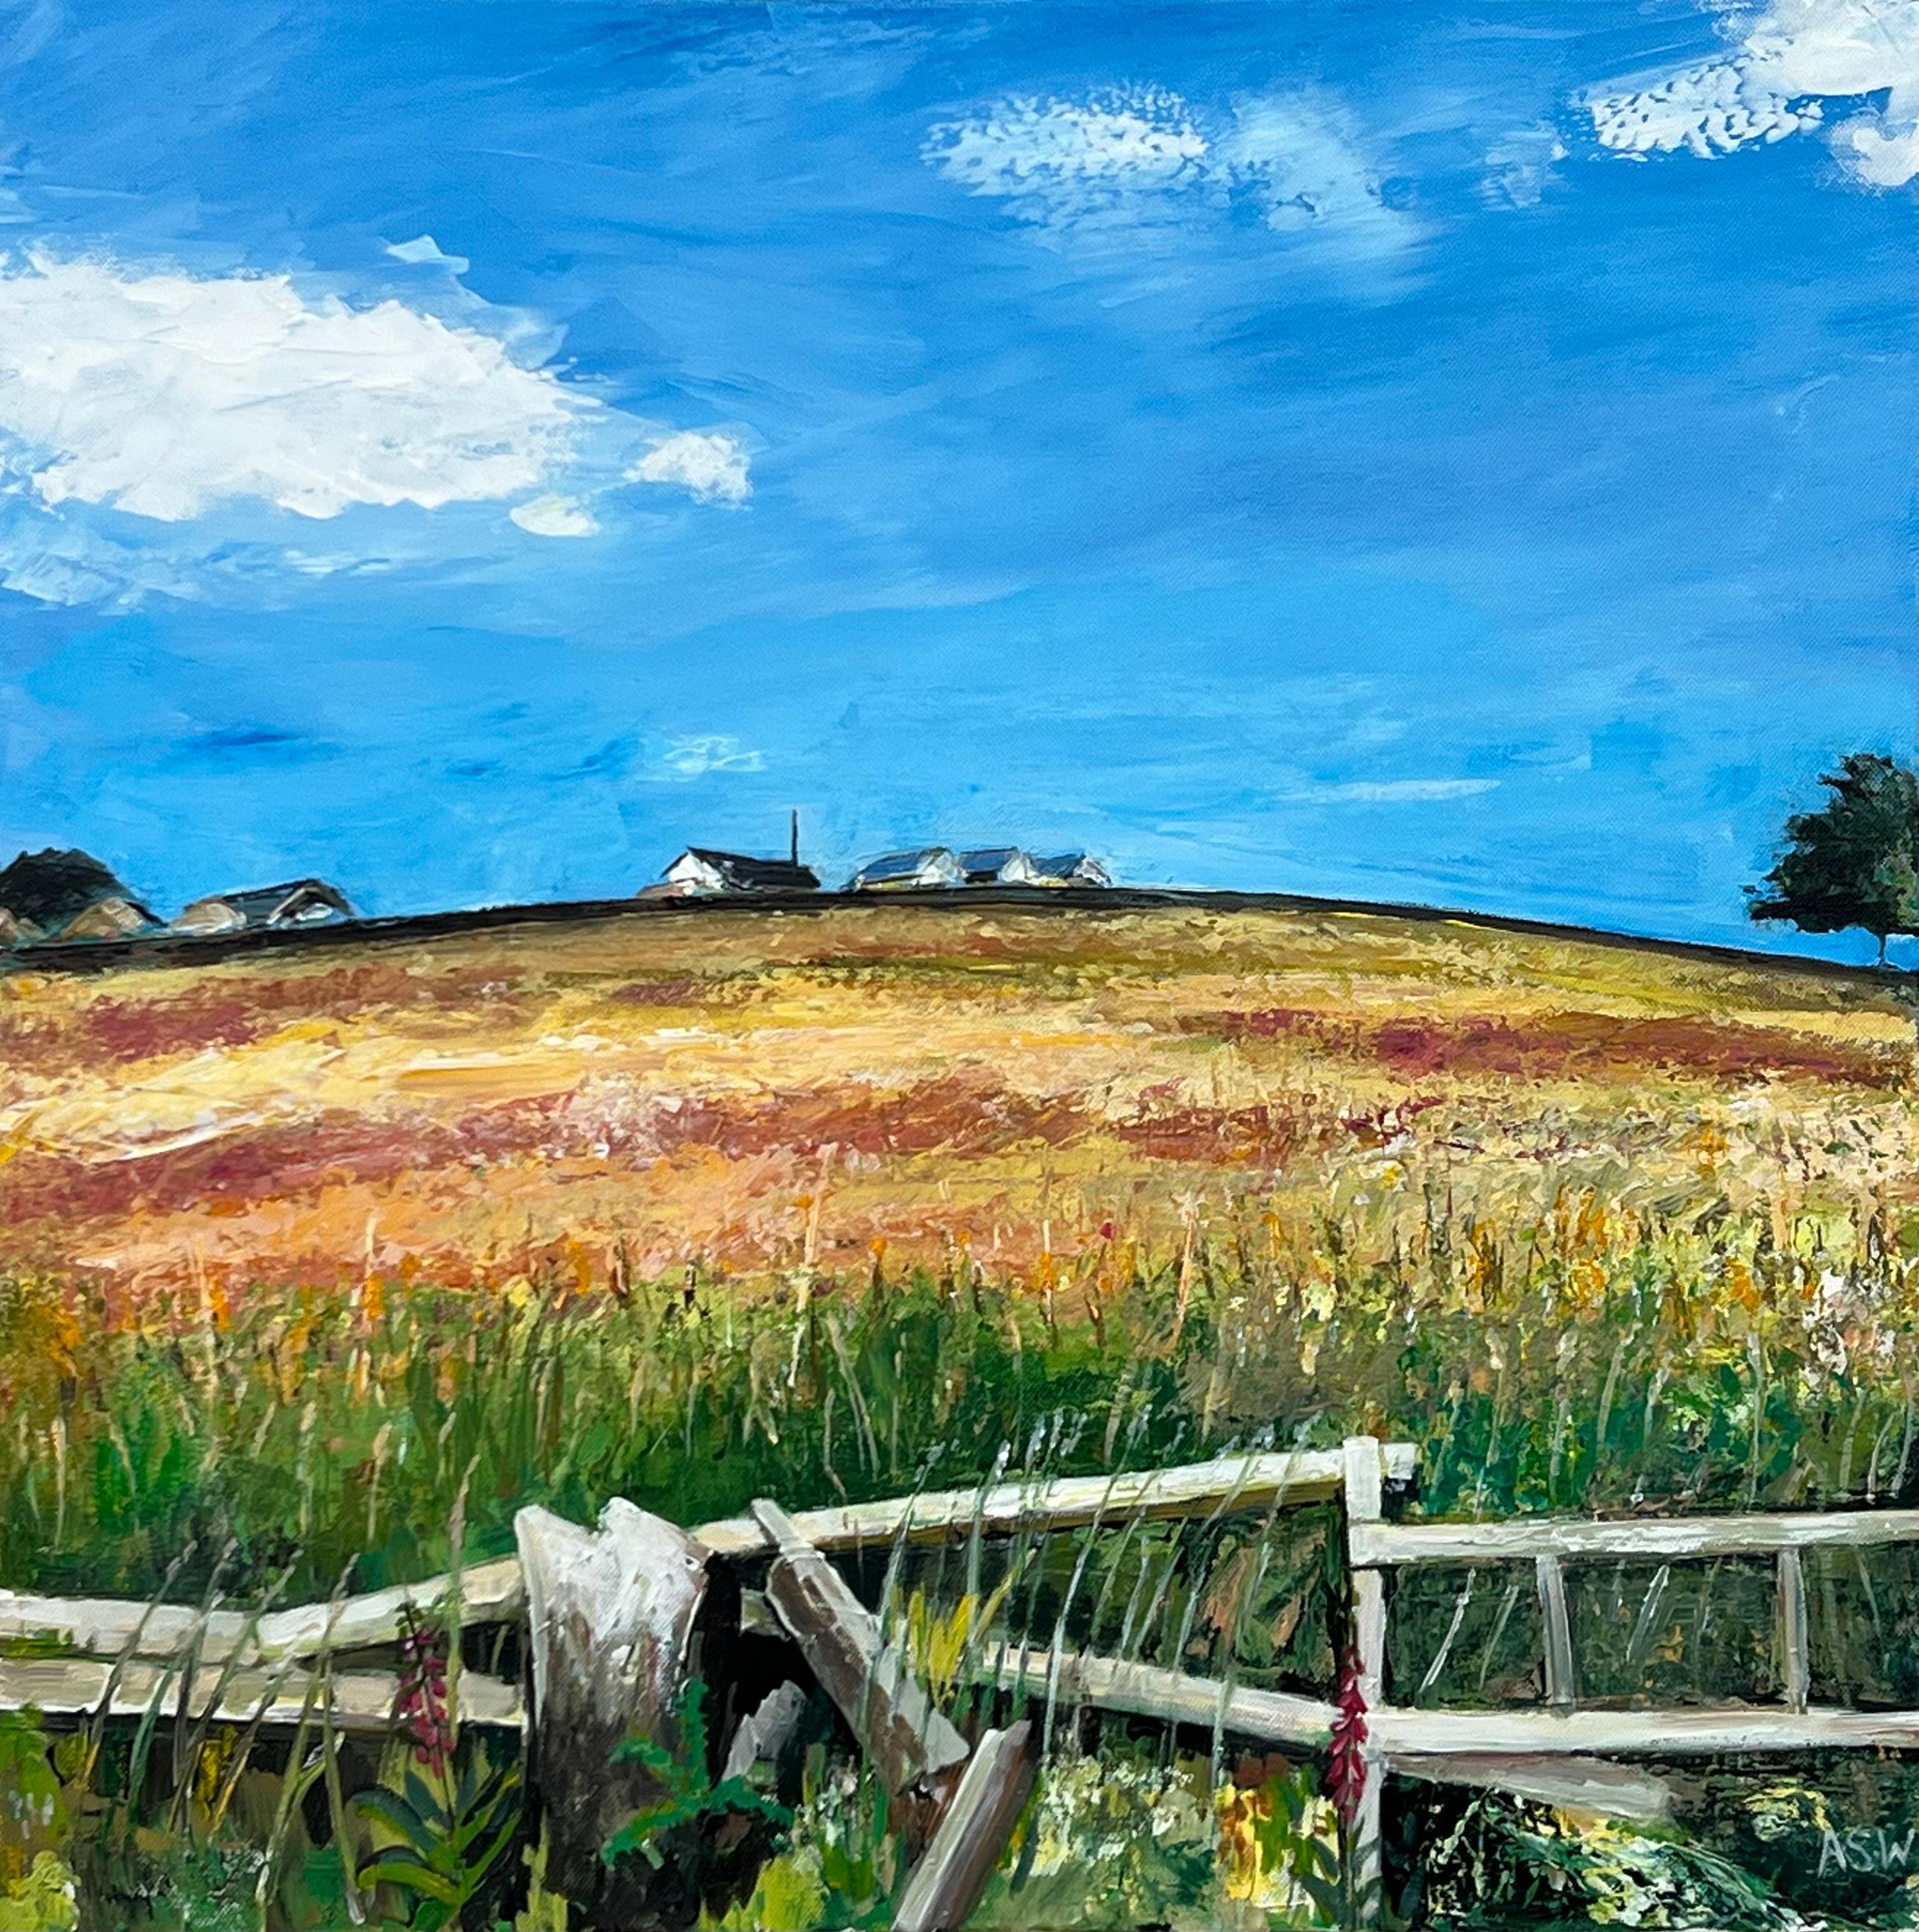 Angela Wakefield Figurative Painting – Gemälde der Lancashire Fields in English Countryside des britischen Landschaftsmalers